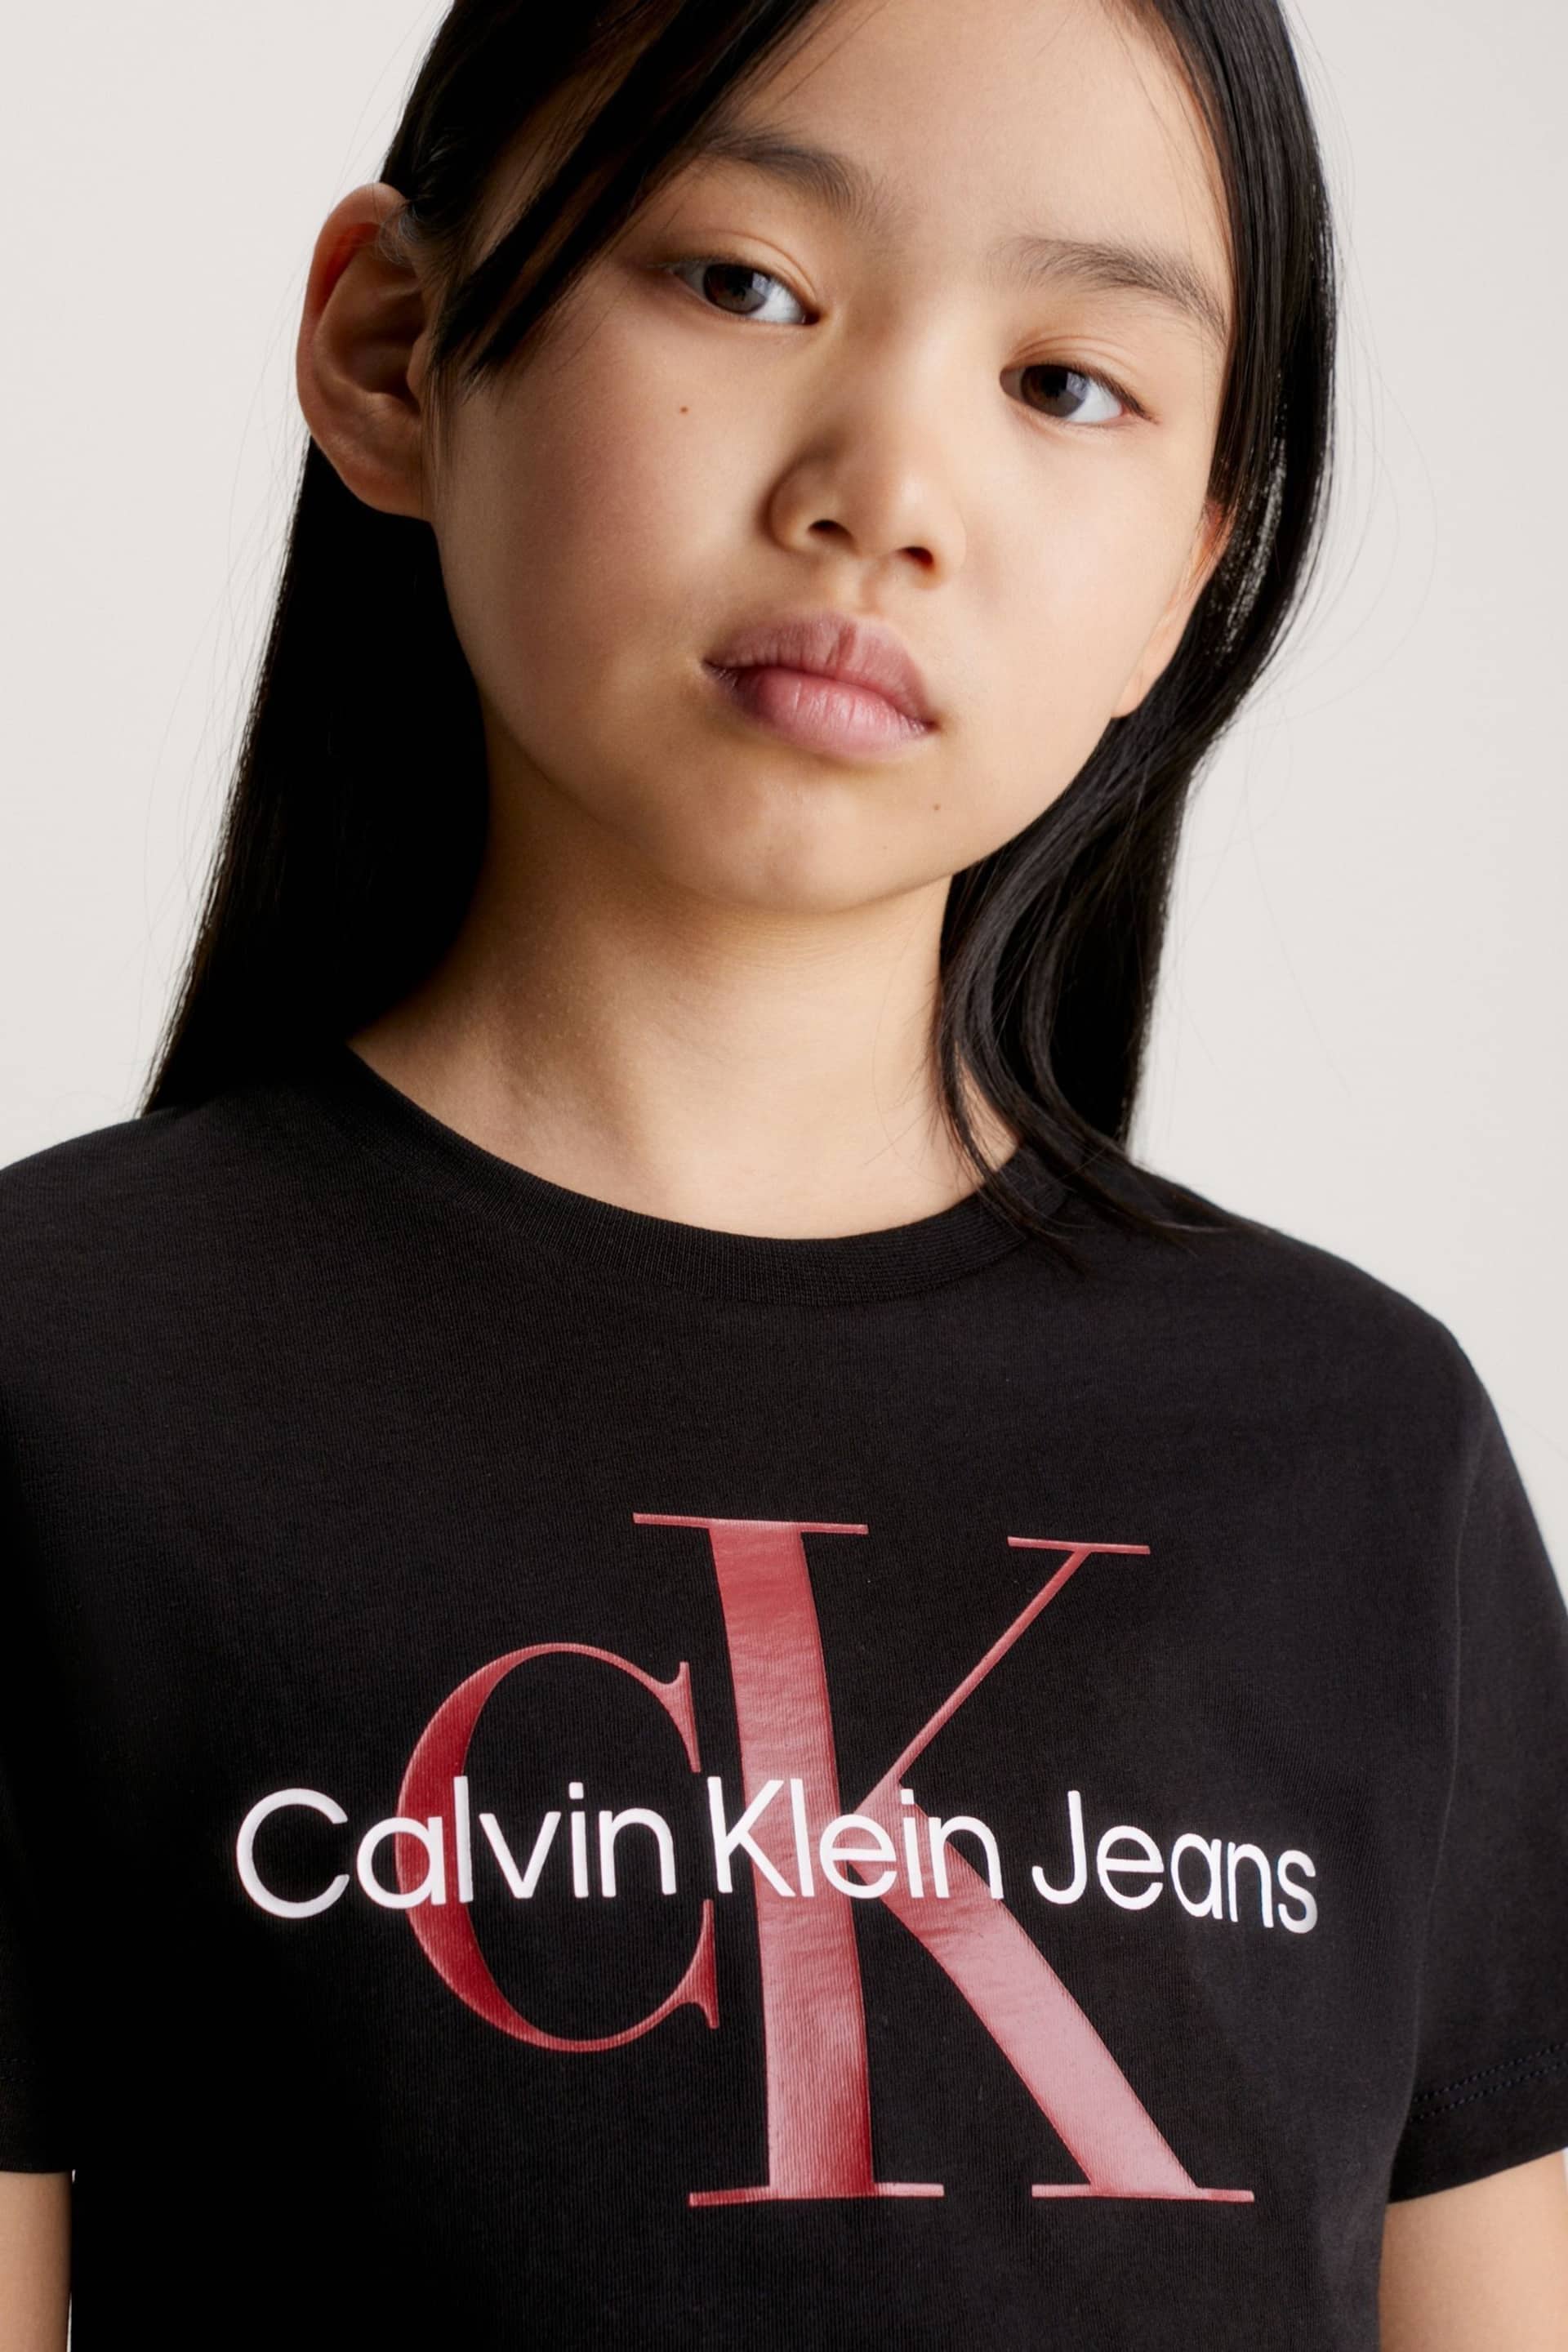 Calvin Klein Black Monogram T-Shirt - Image 3 of 4